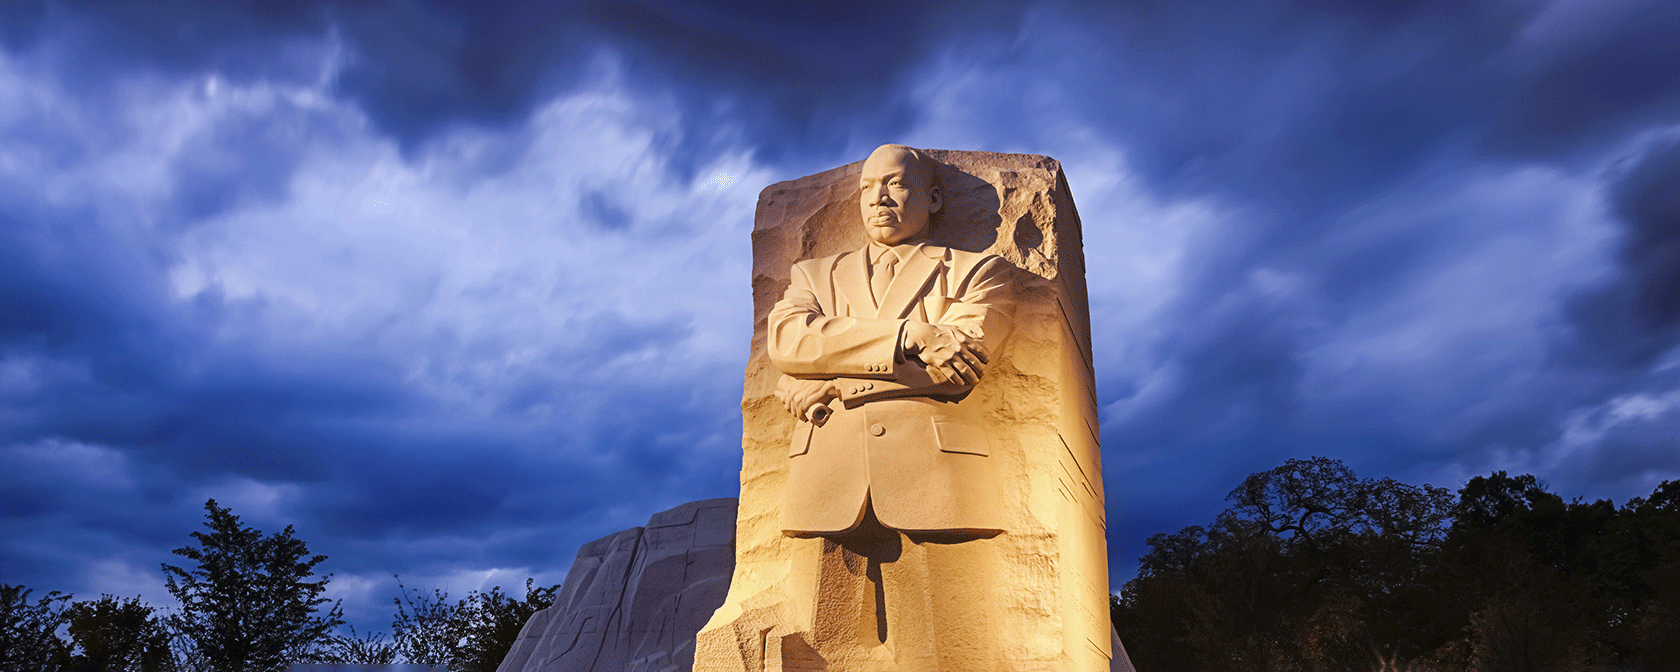 Мемориал Мартина Лютера Кинга младшего ночью